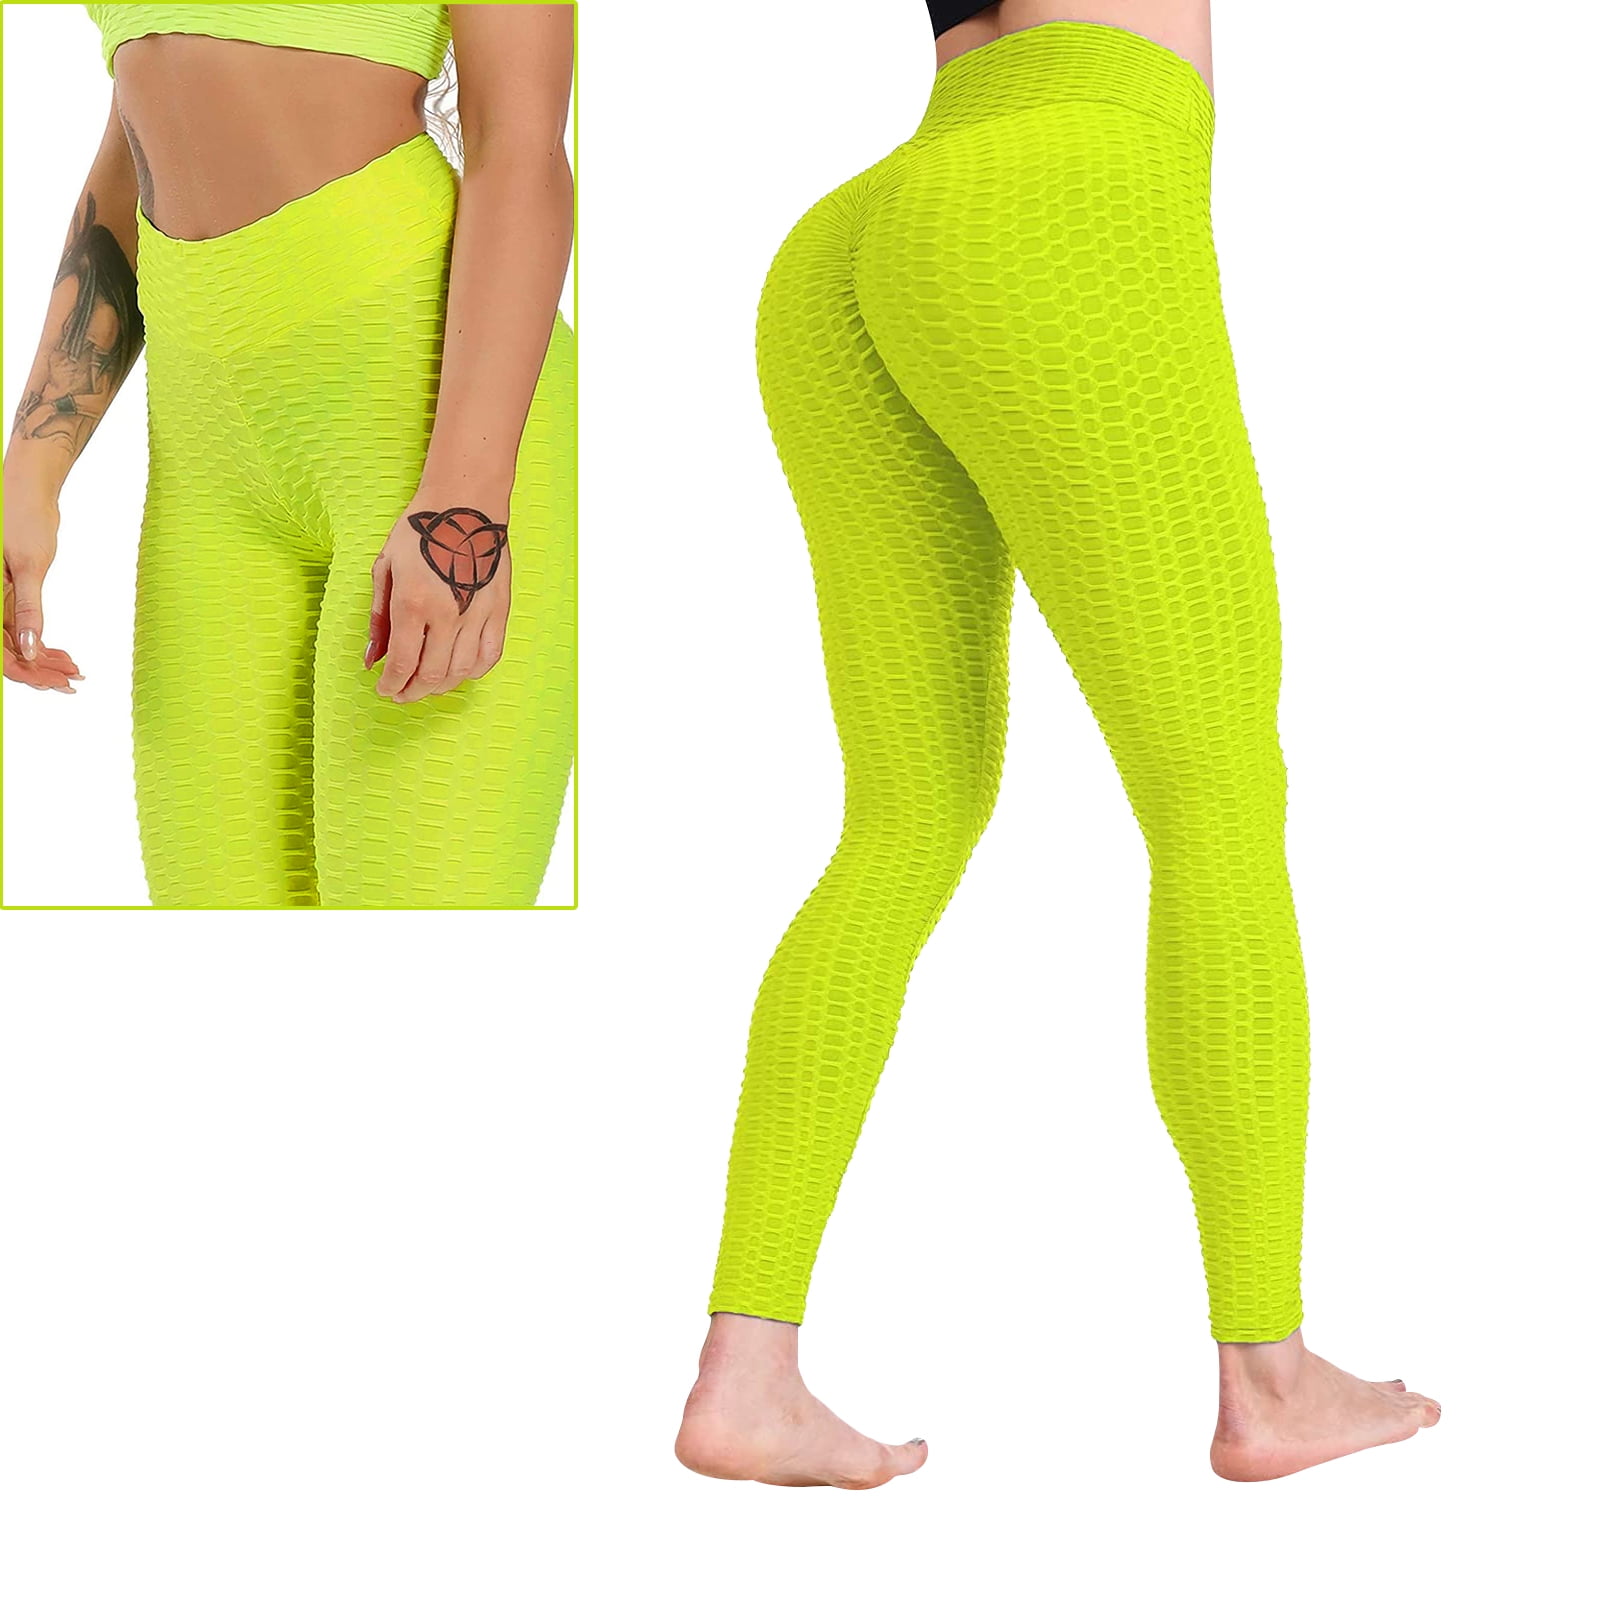 🍑 Yoga Pants 🔎 Squat Test  🤔 Do your Yoga Pants Past The Squat